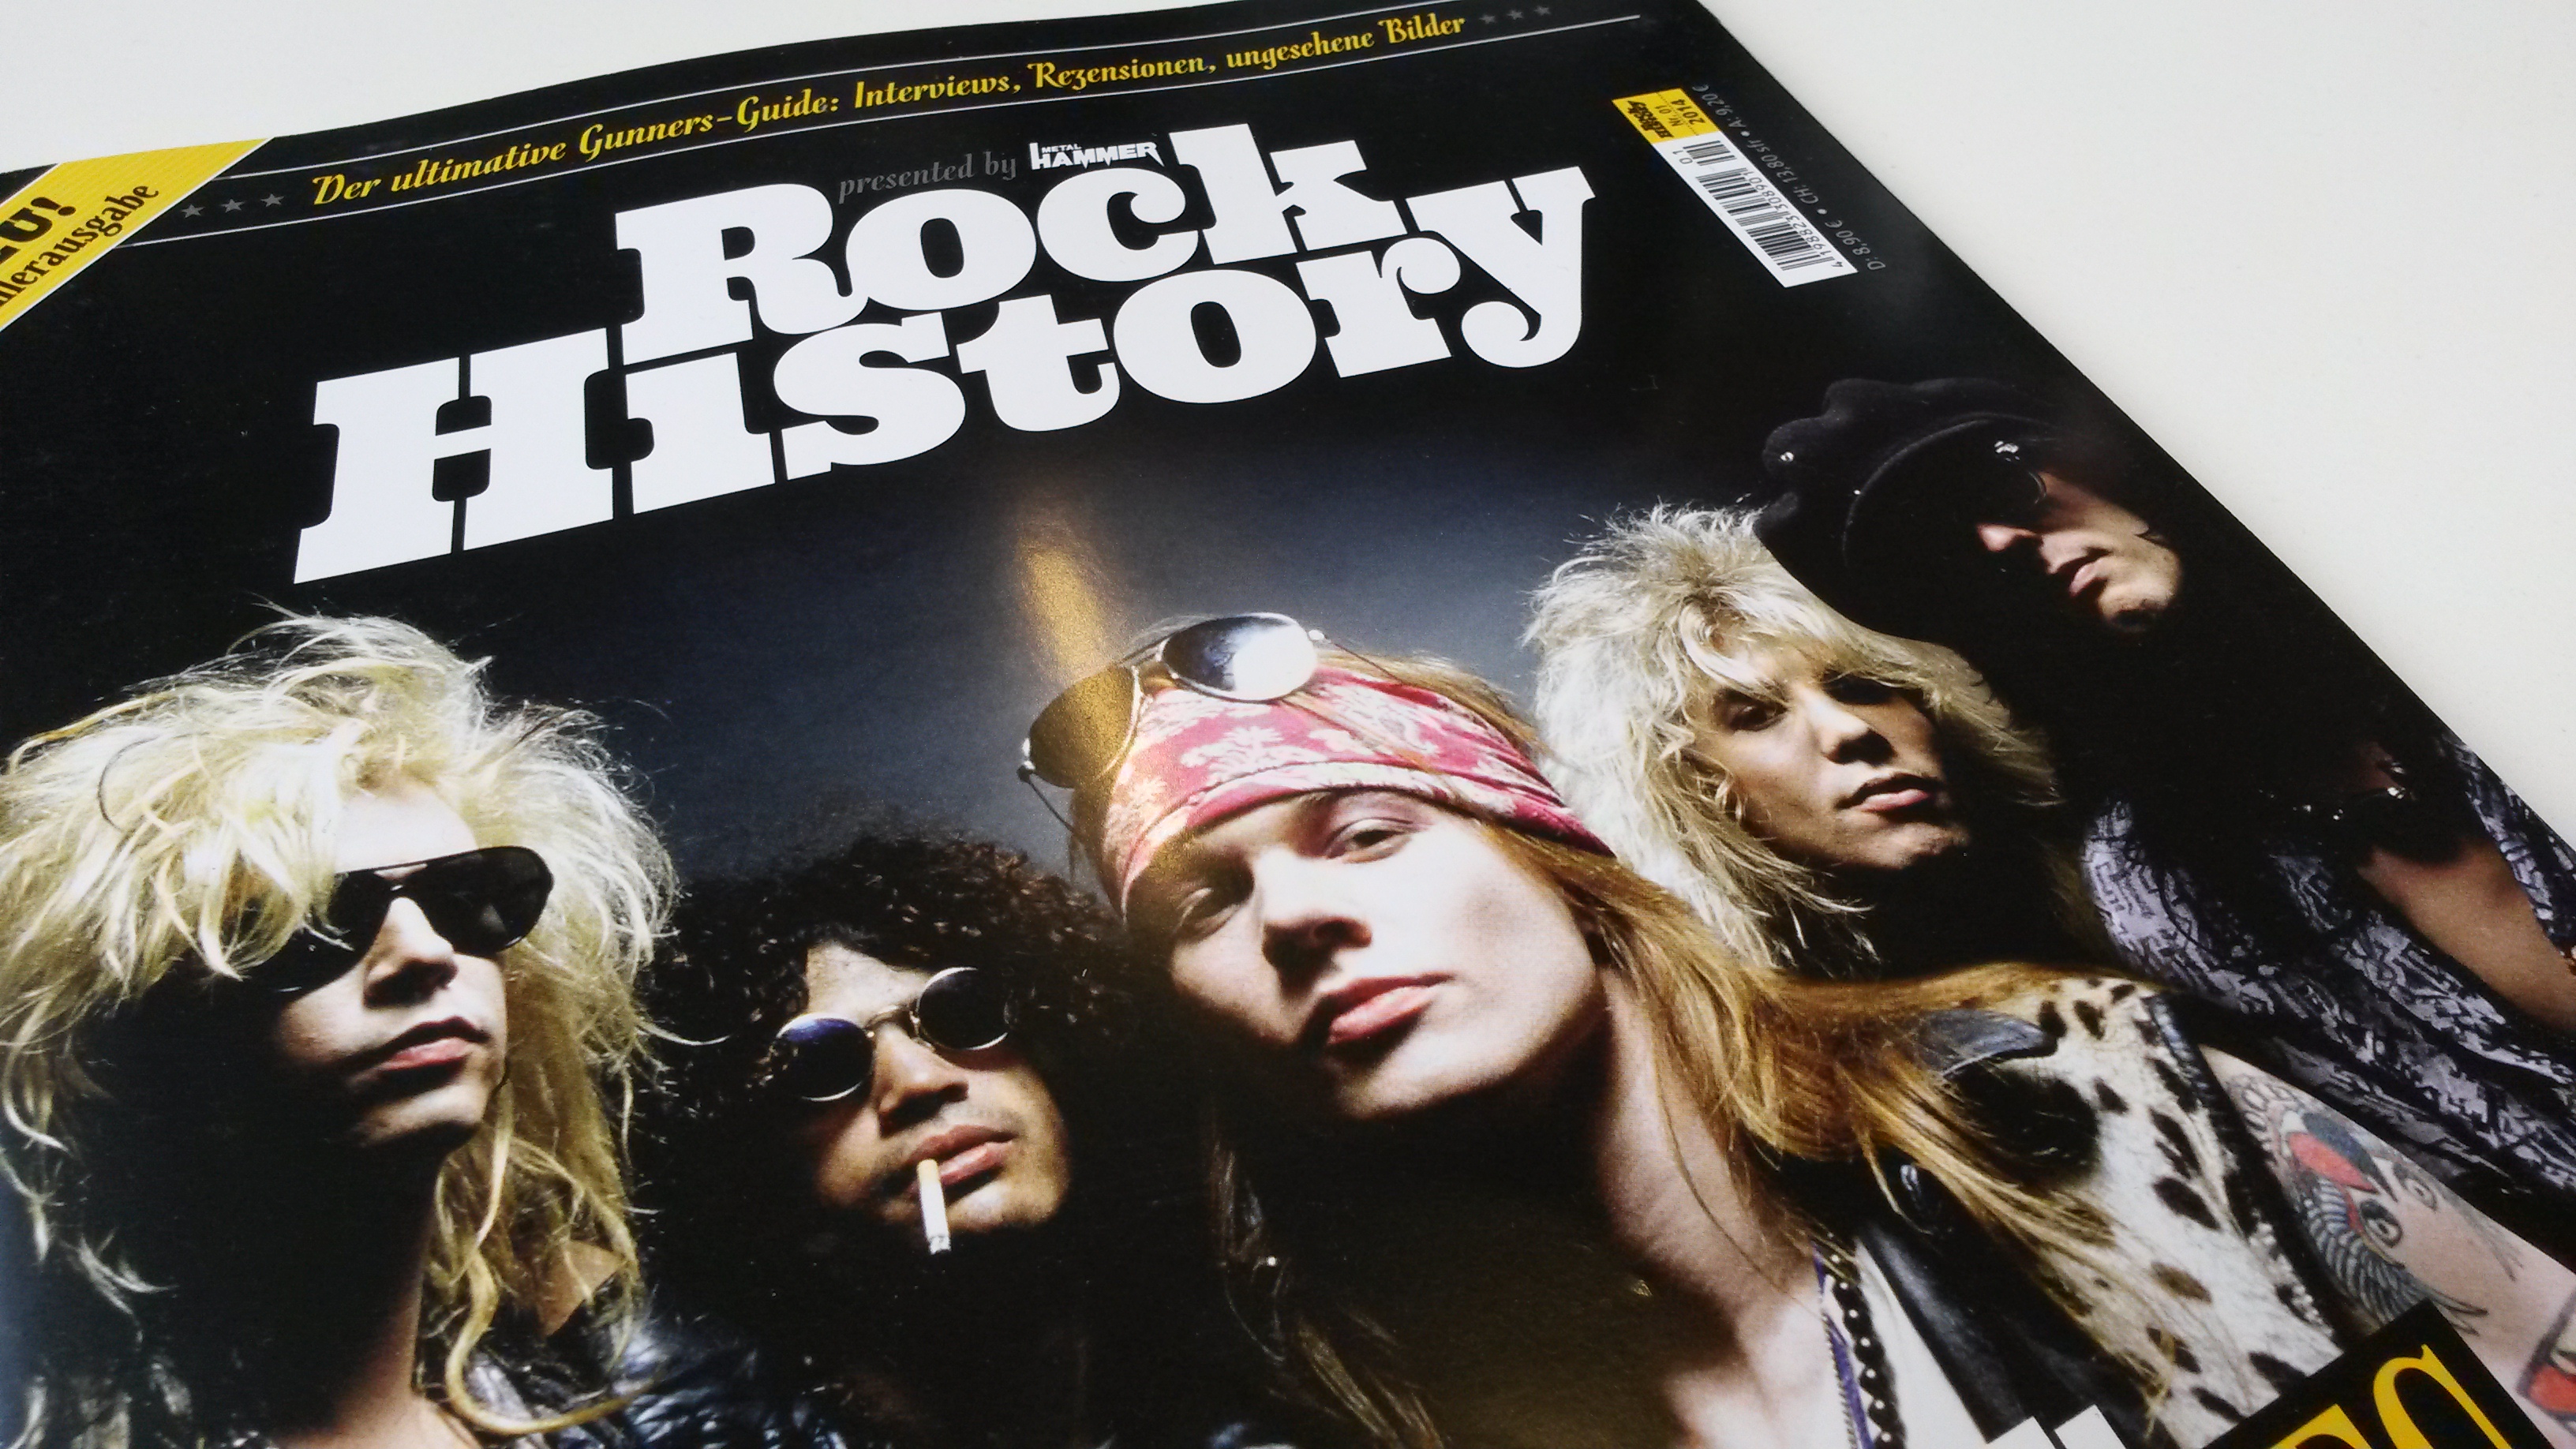 Guns N’ Roses-Sonderheft ROCK HISTORY presented by METAL HAMMER